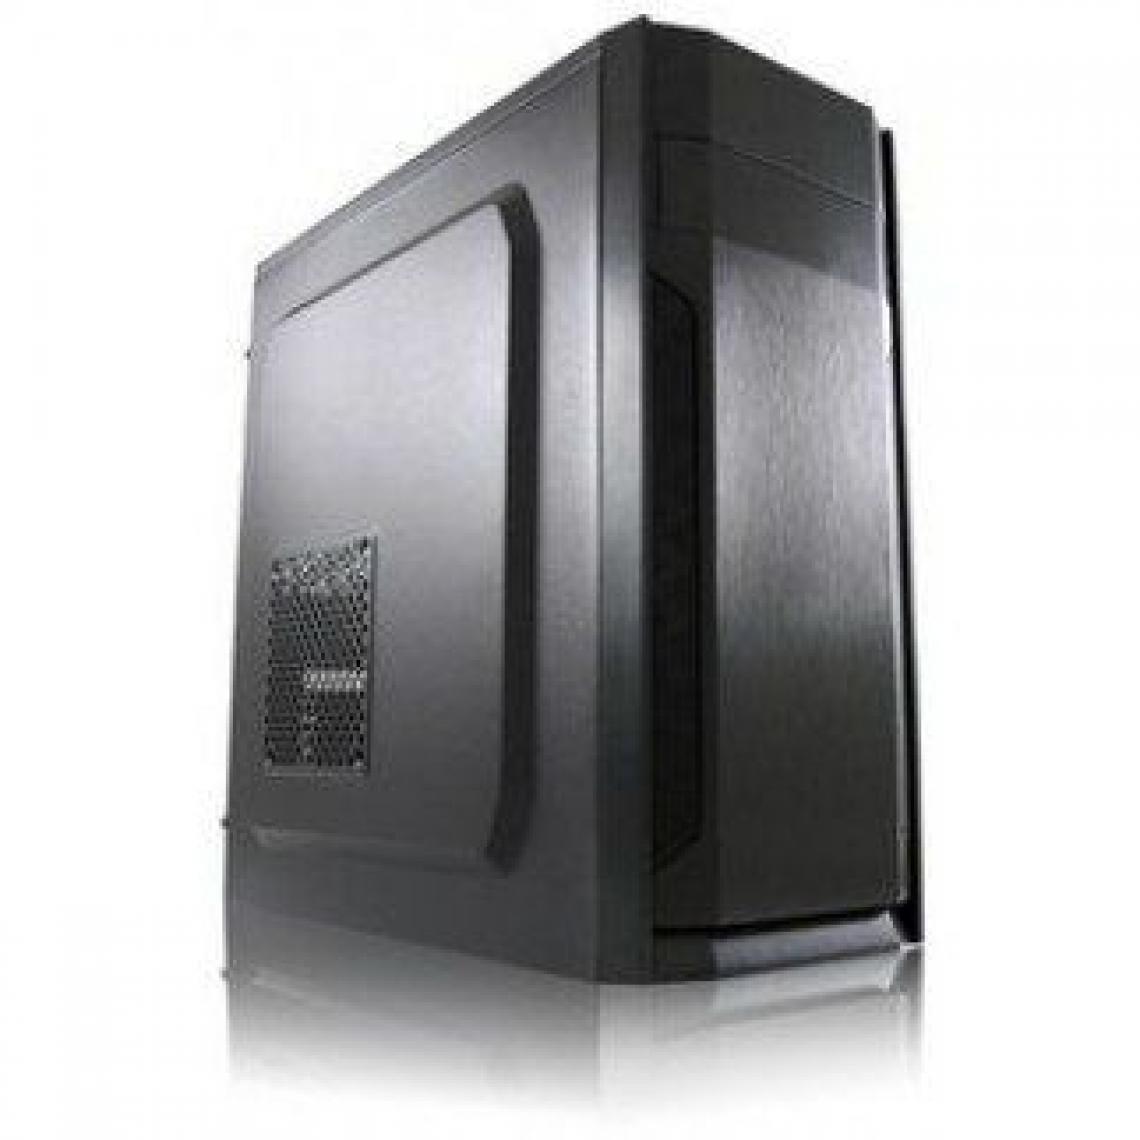 Lc Power - LC-Power 7036b Midi Black ordinateur Case Computer Cases (Midi-Tower, PC, Metal, Plastic, ATX, Micro ATX, Mini-ITX, Black, 14.5 cm) - Boitier PC